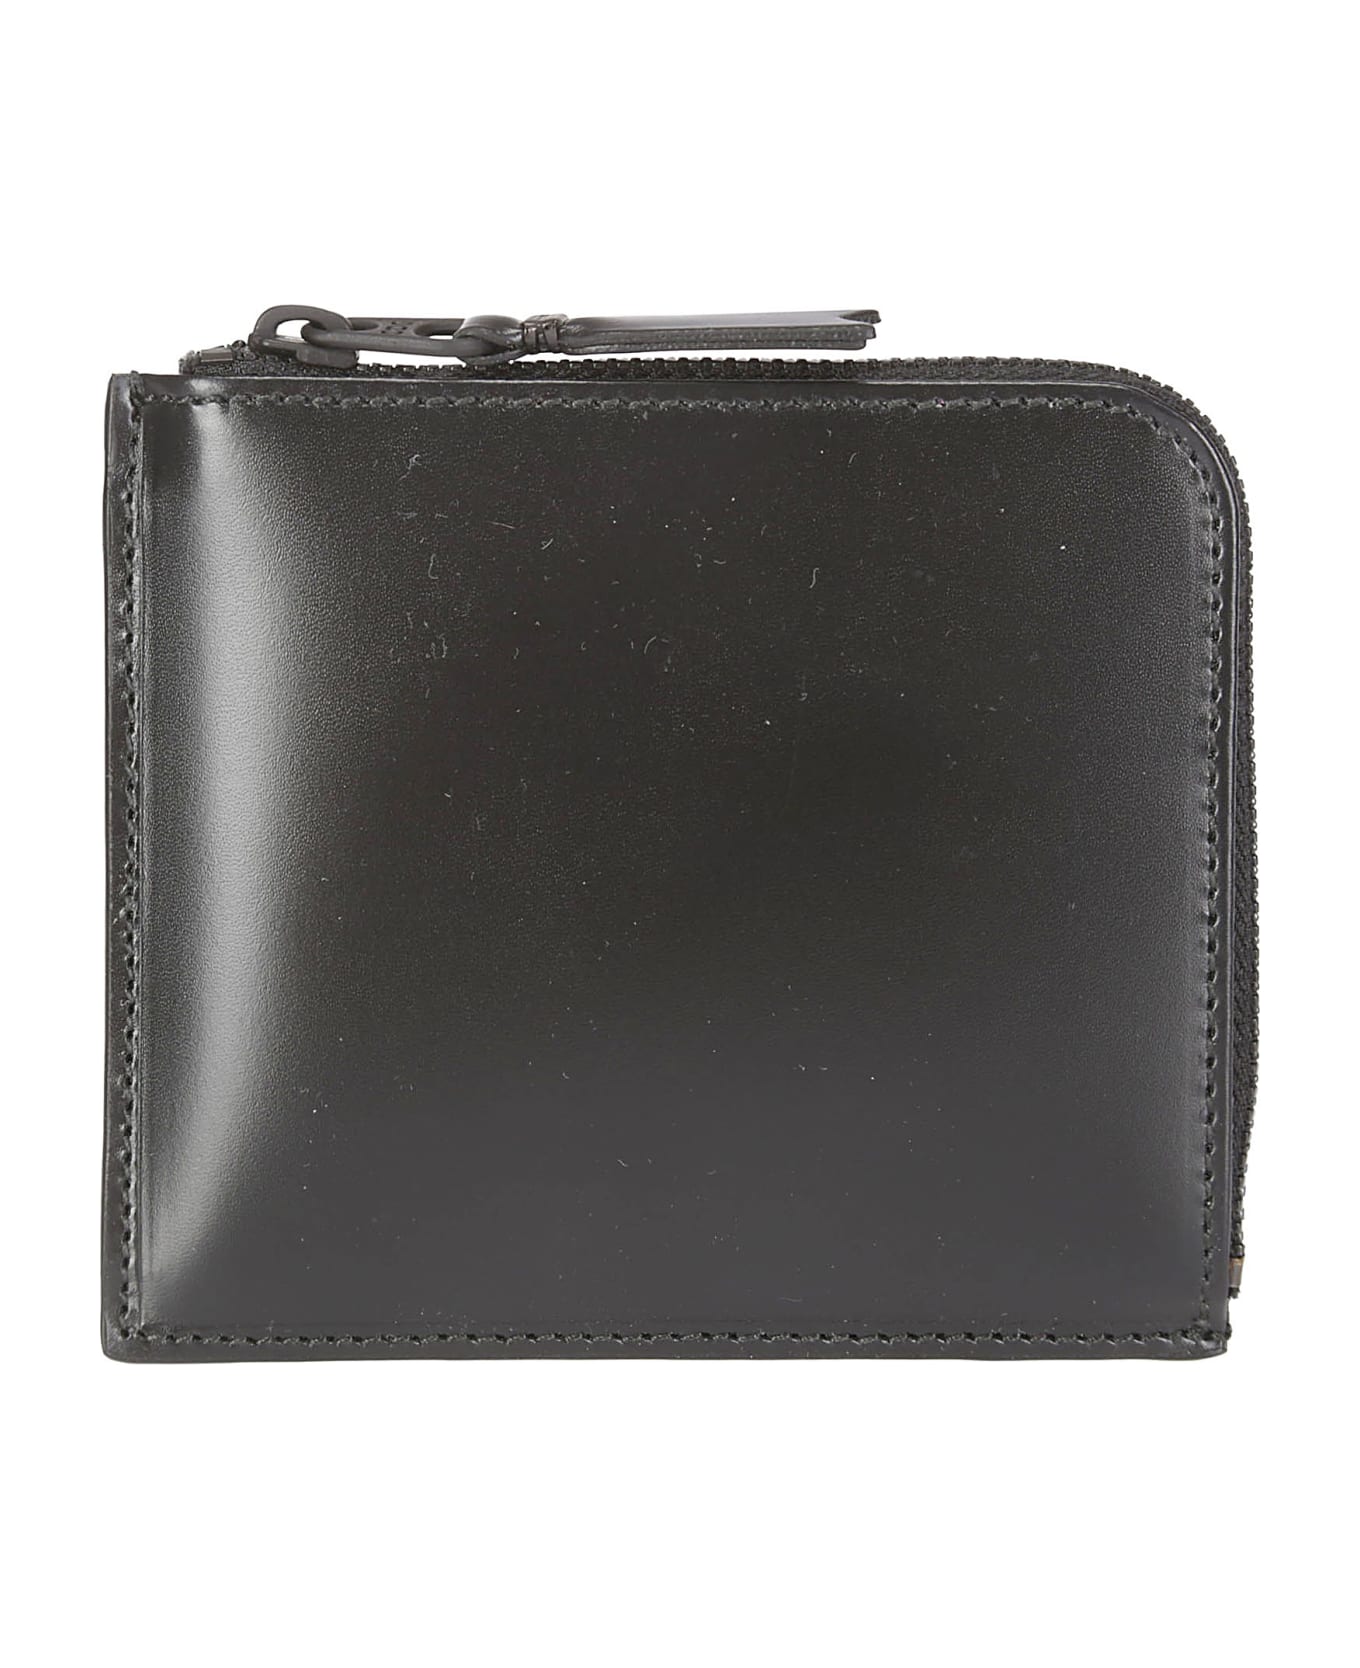 Comme des Garçons Wallet Very Black Leather Line - BLACK 財布